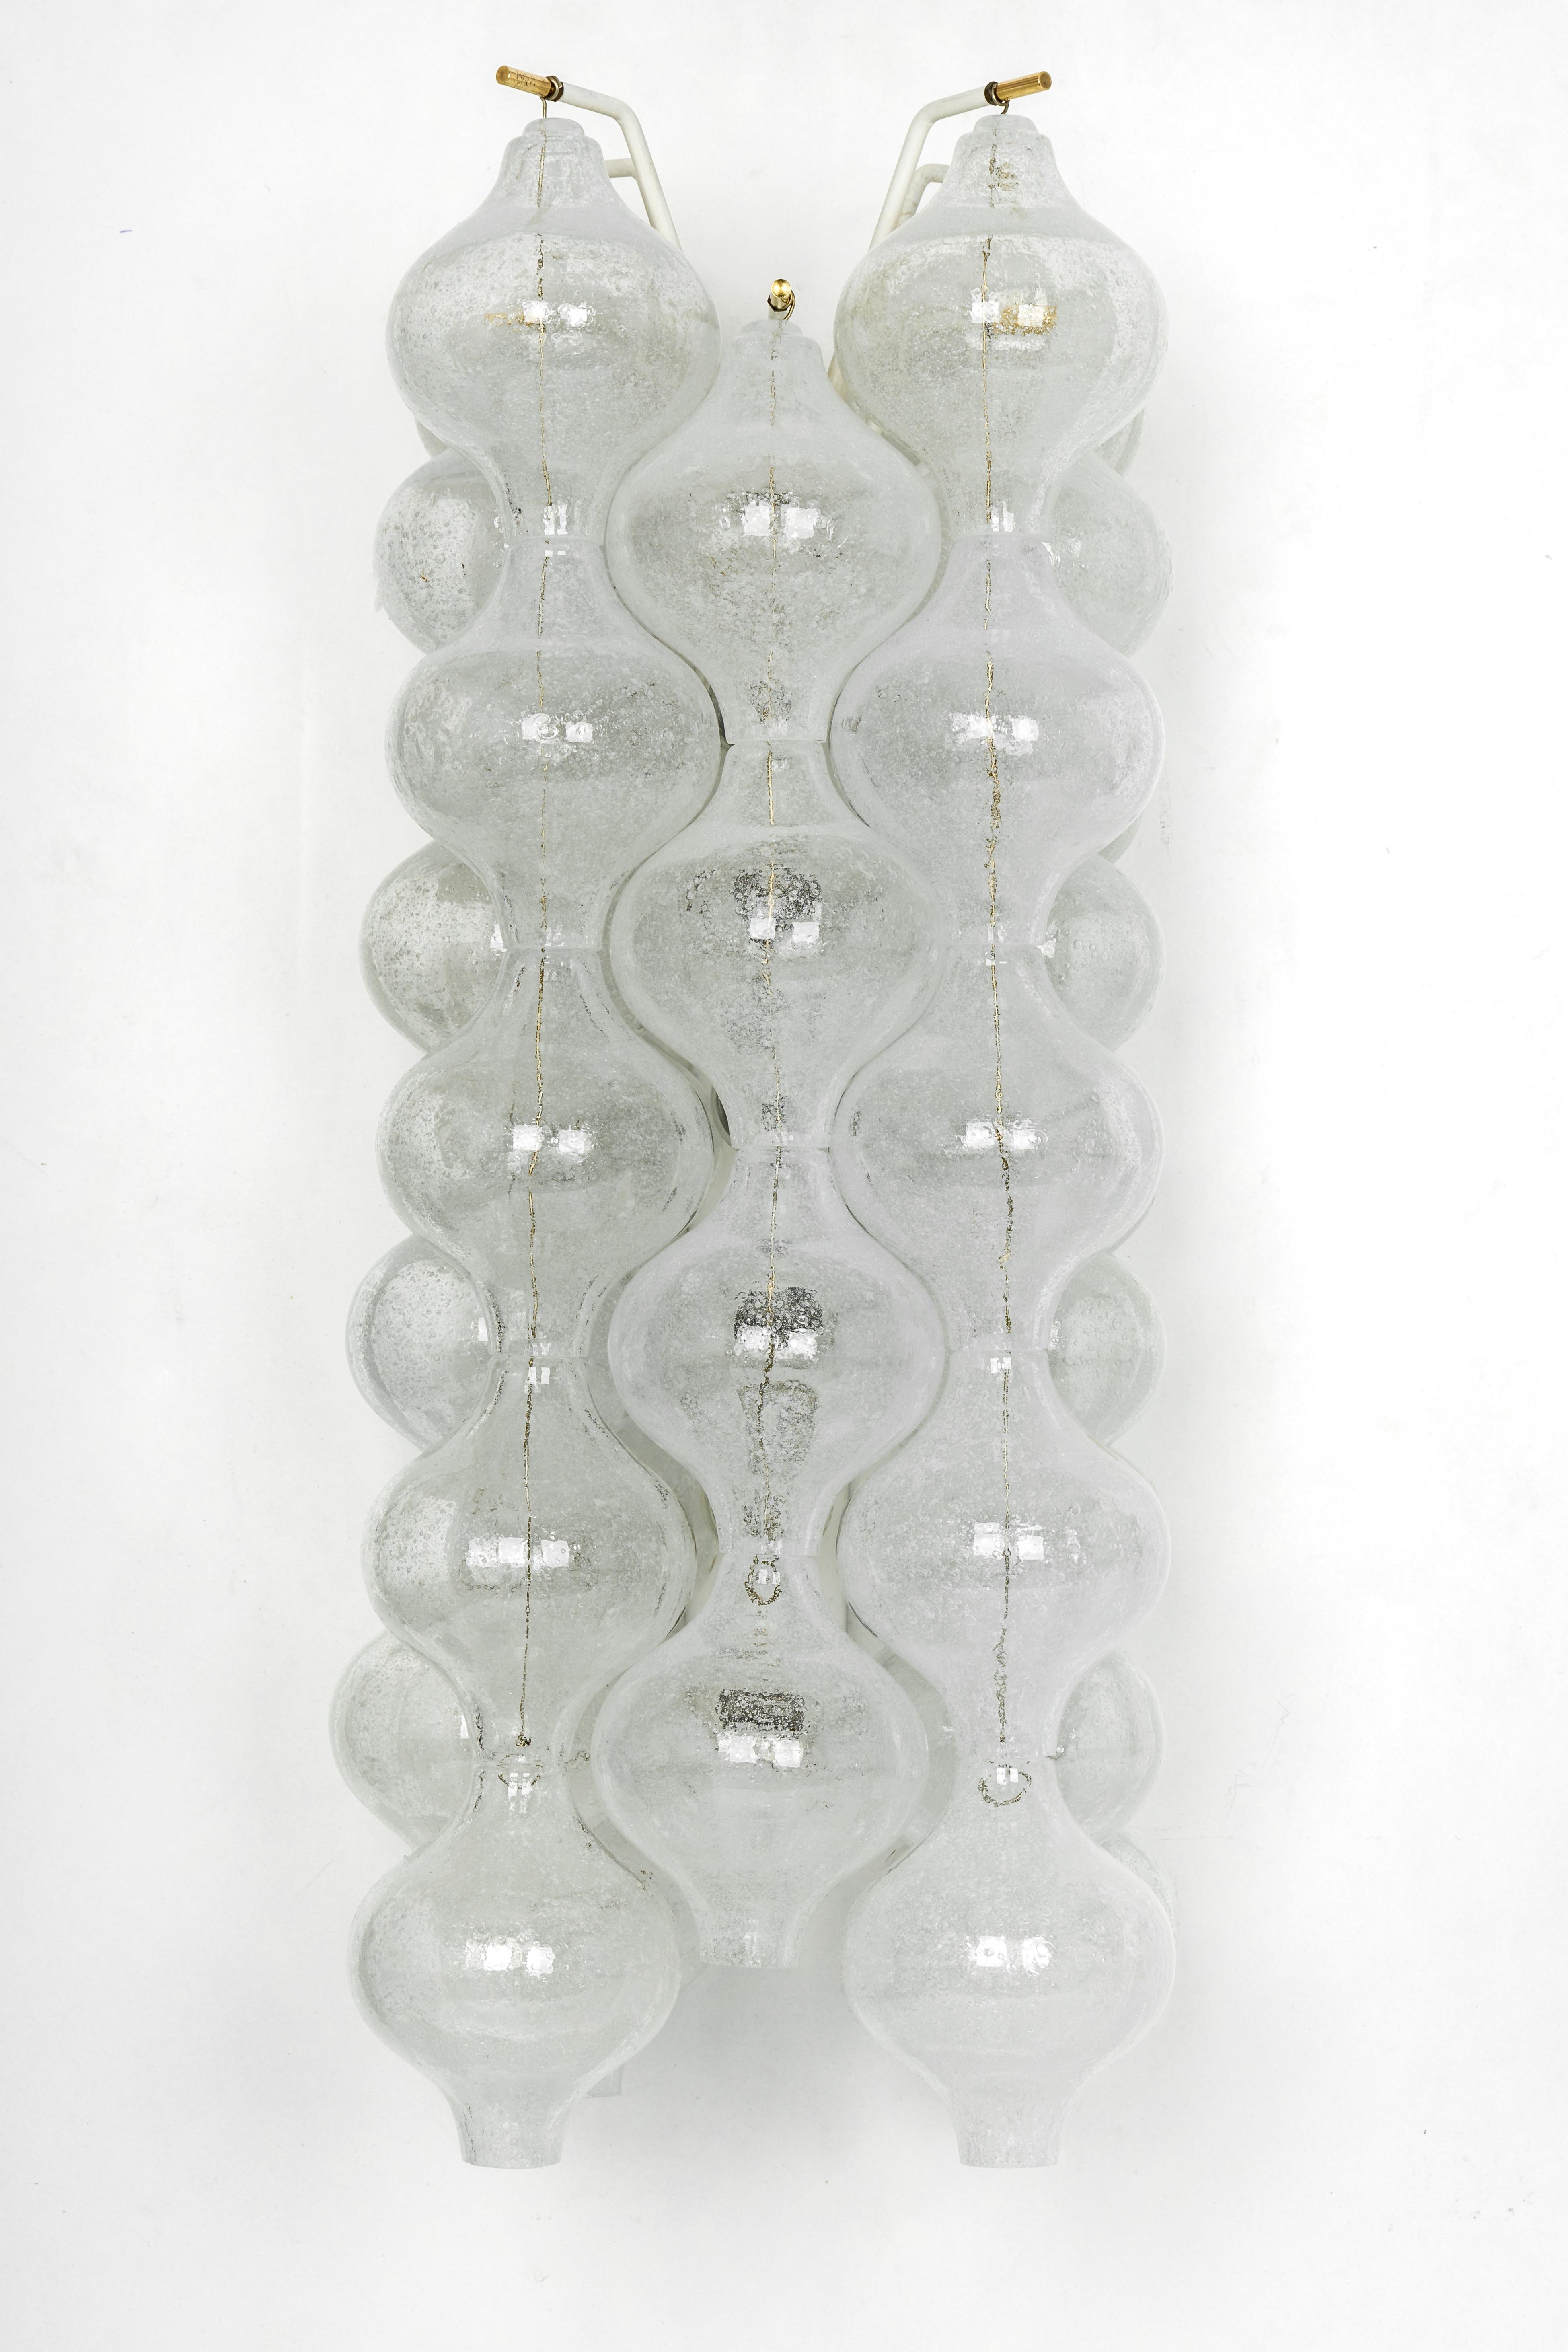 Wunderschöner Wandleuchter aus der Mitte des Jahrhunderts, hergestellt von Kalmar, Österreich, ca. 1970-1979.
Jedes tulpenförmige Glas ist handgefertigt, was jedes Glas zu einem Einzelstück macht. Die Leuchte besteht aus 32 Glasstücken auf einem